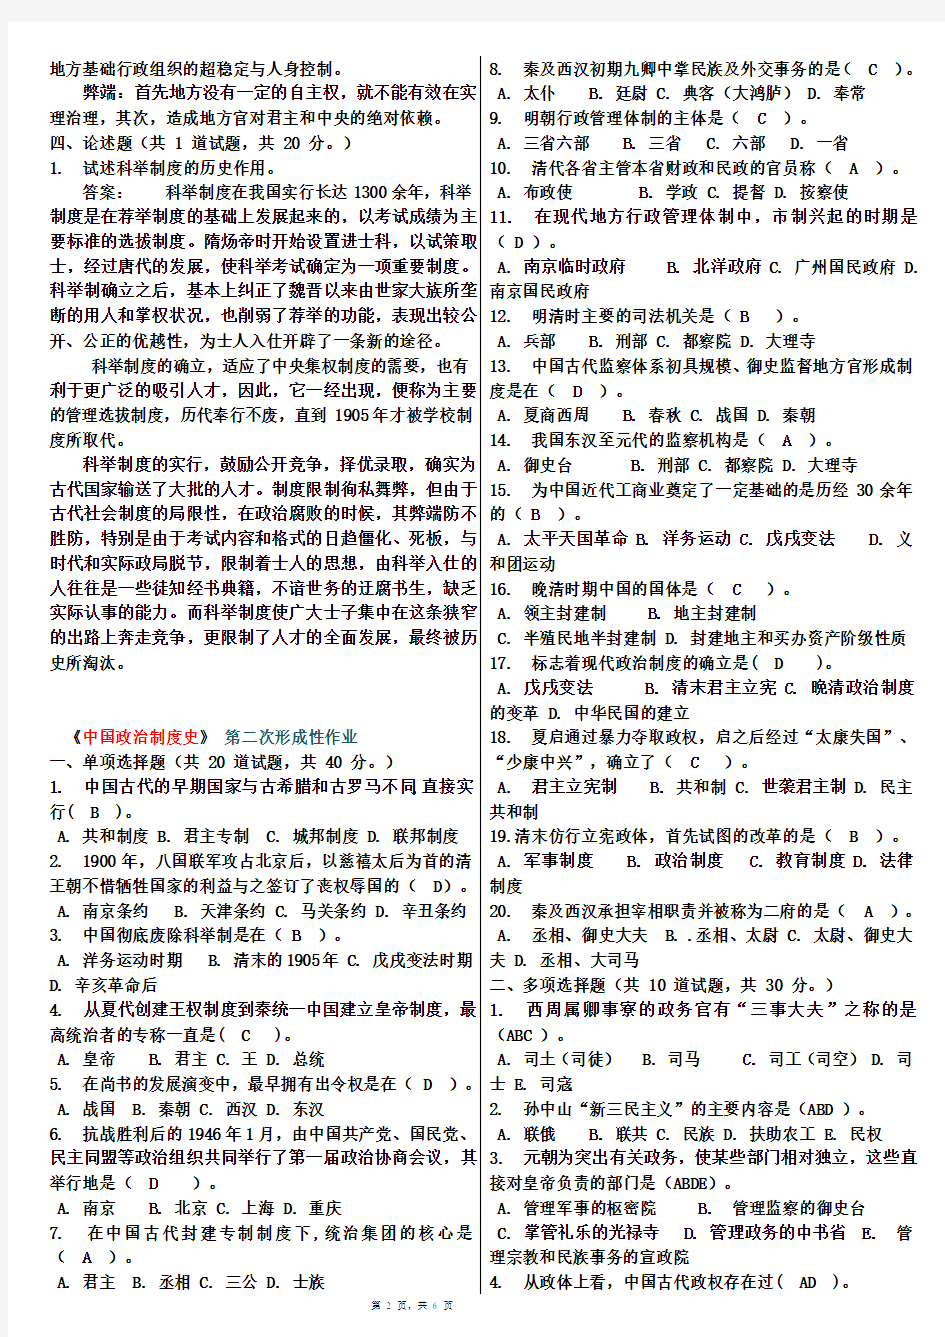 《中国政治制度史》任务1-4